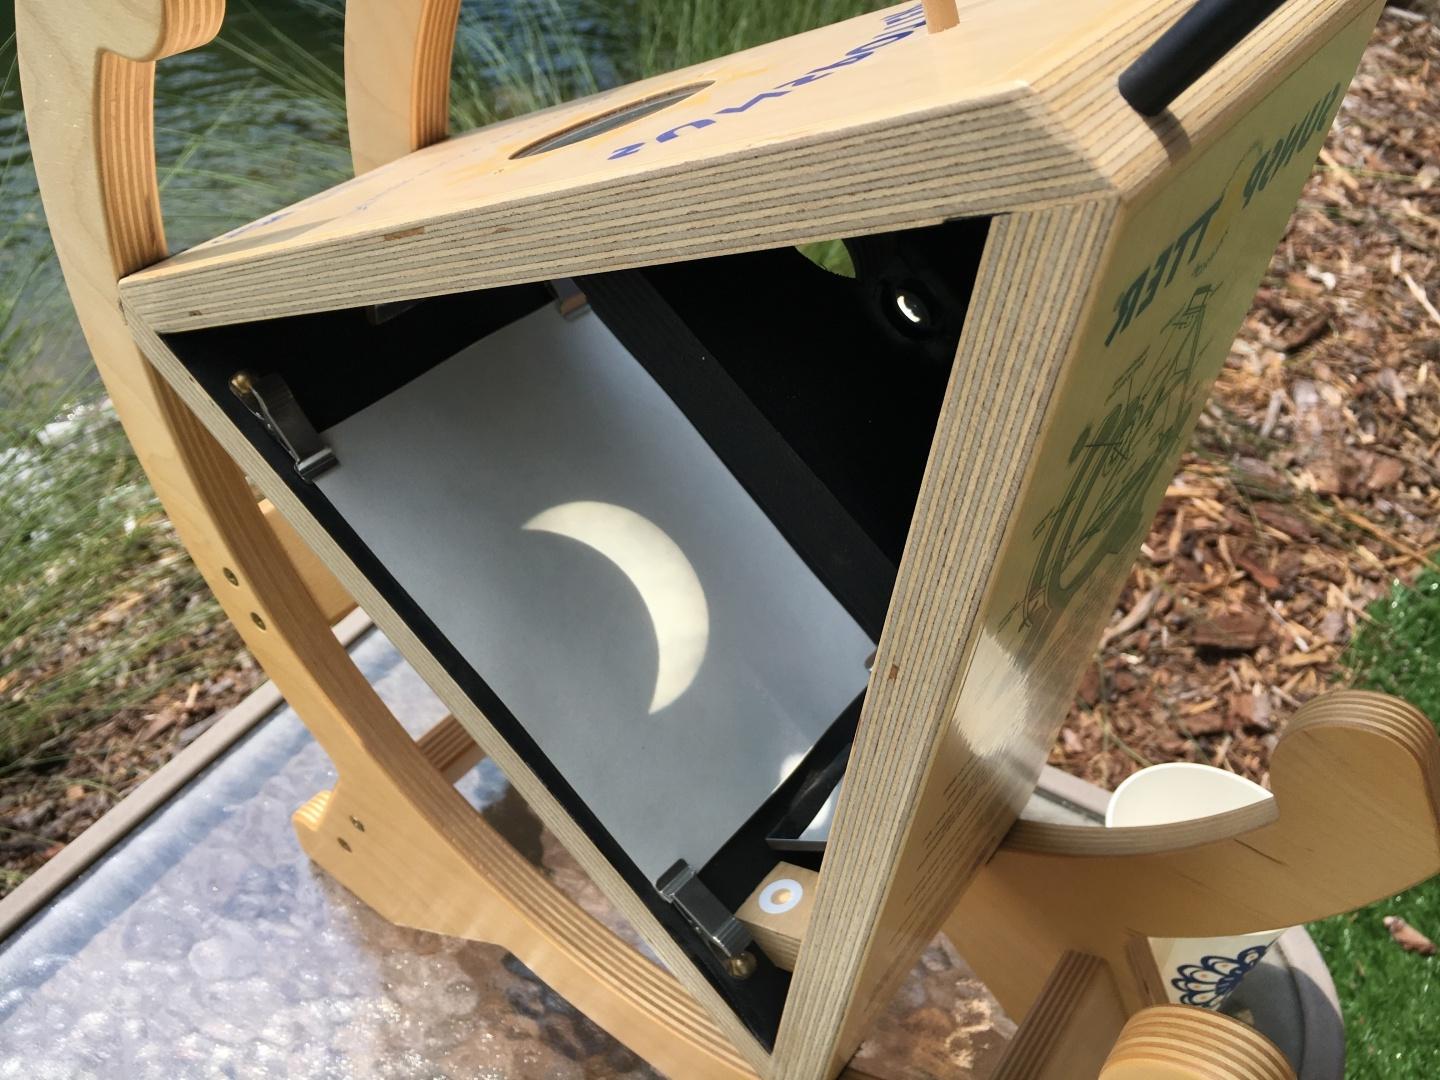 由木头制成的灯箱，可以投射出清晰的日食图像 